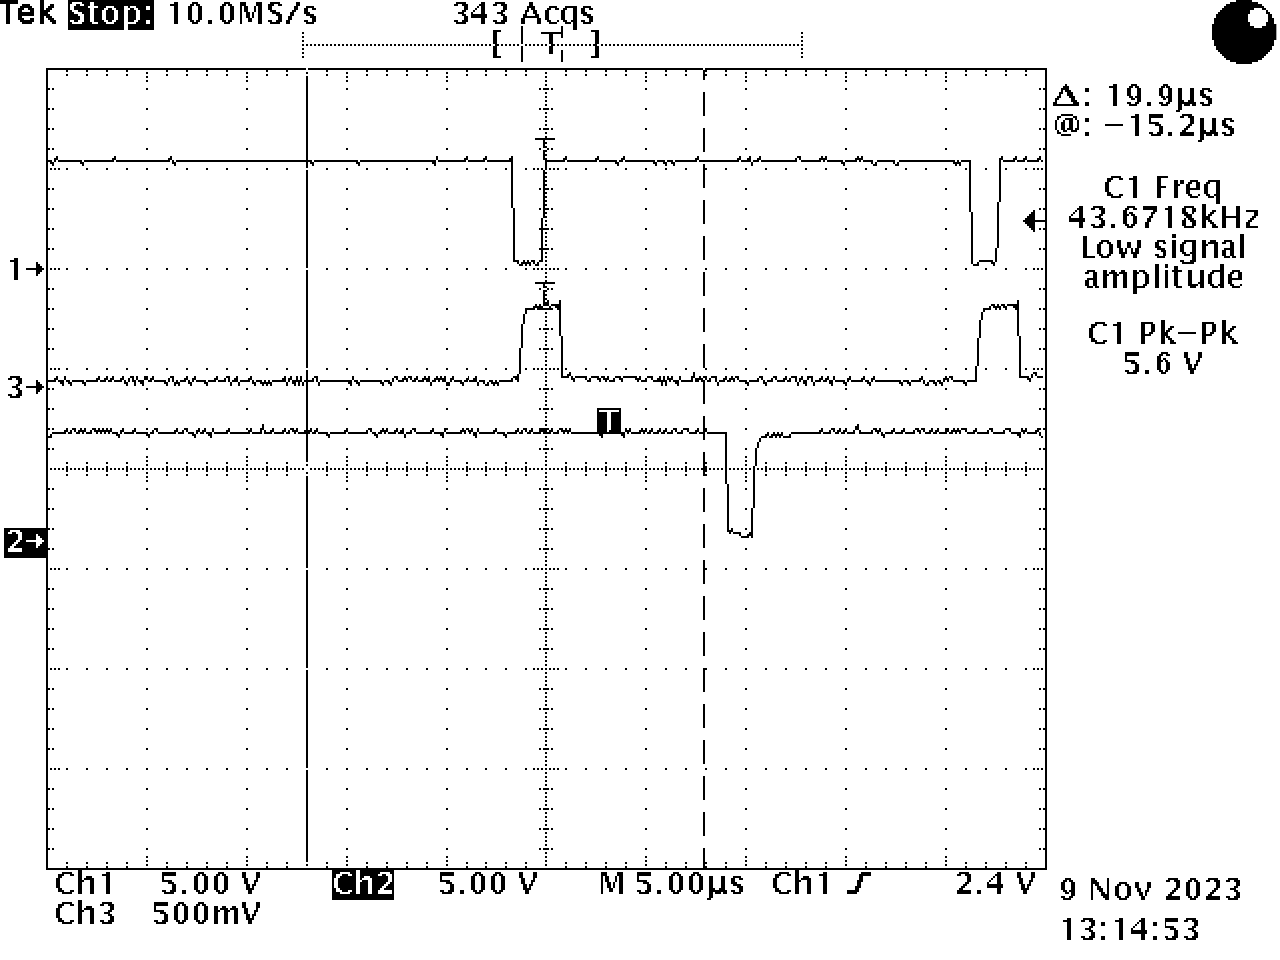 Bitmap screenshot of a TDS 420A oscilloscope